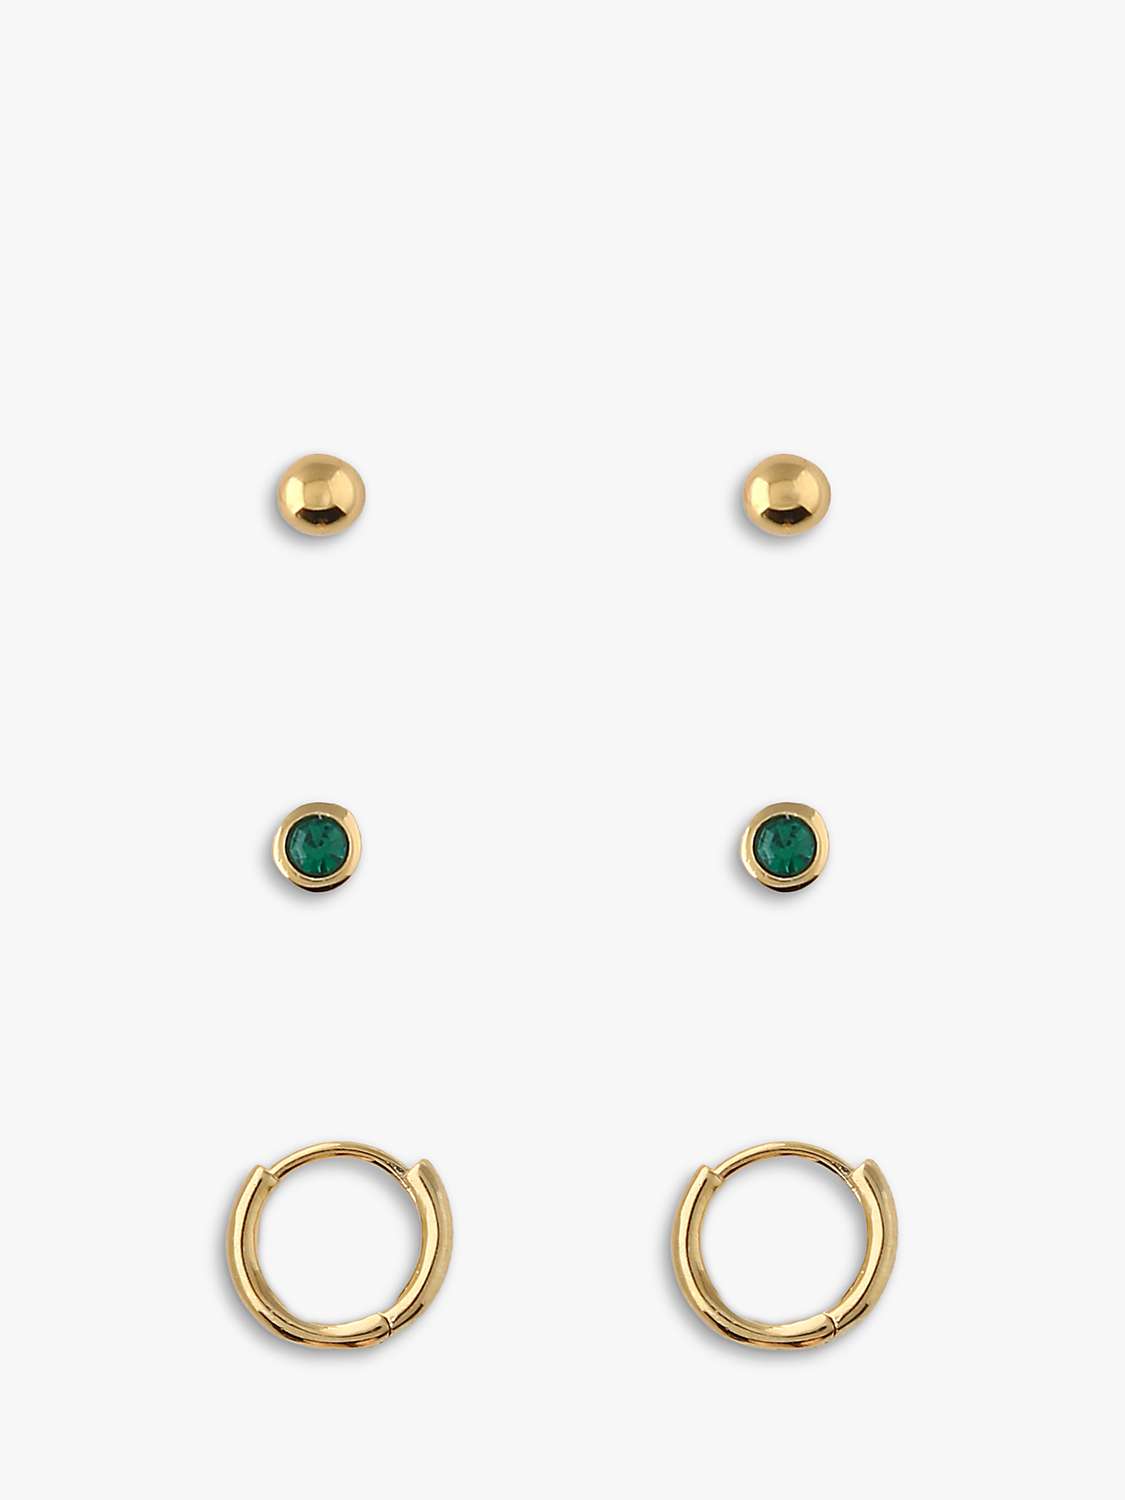 Buy Orelia Swarovski Emerald Stud & Hoop Earrings, Pack of 3, Pale Gold Online at johnlewis.com